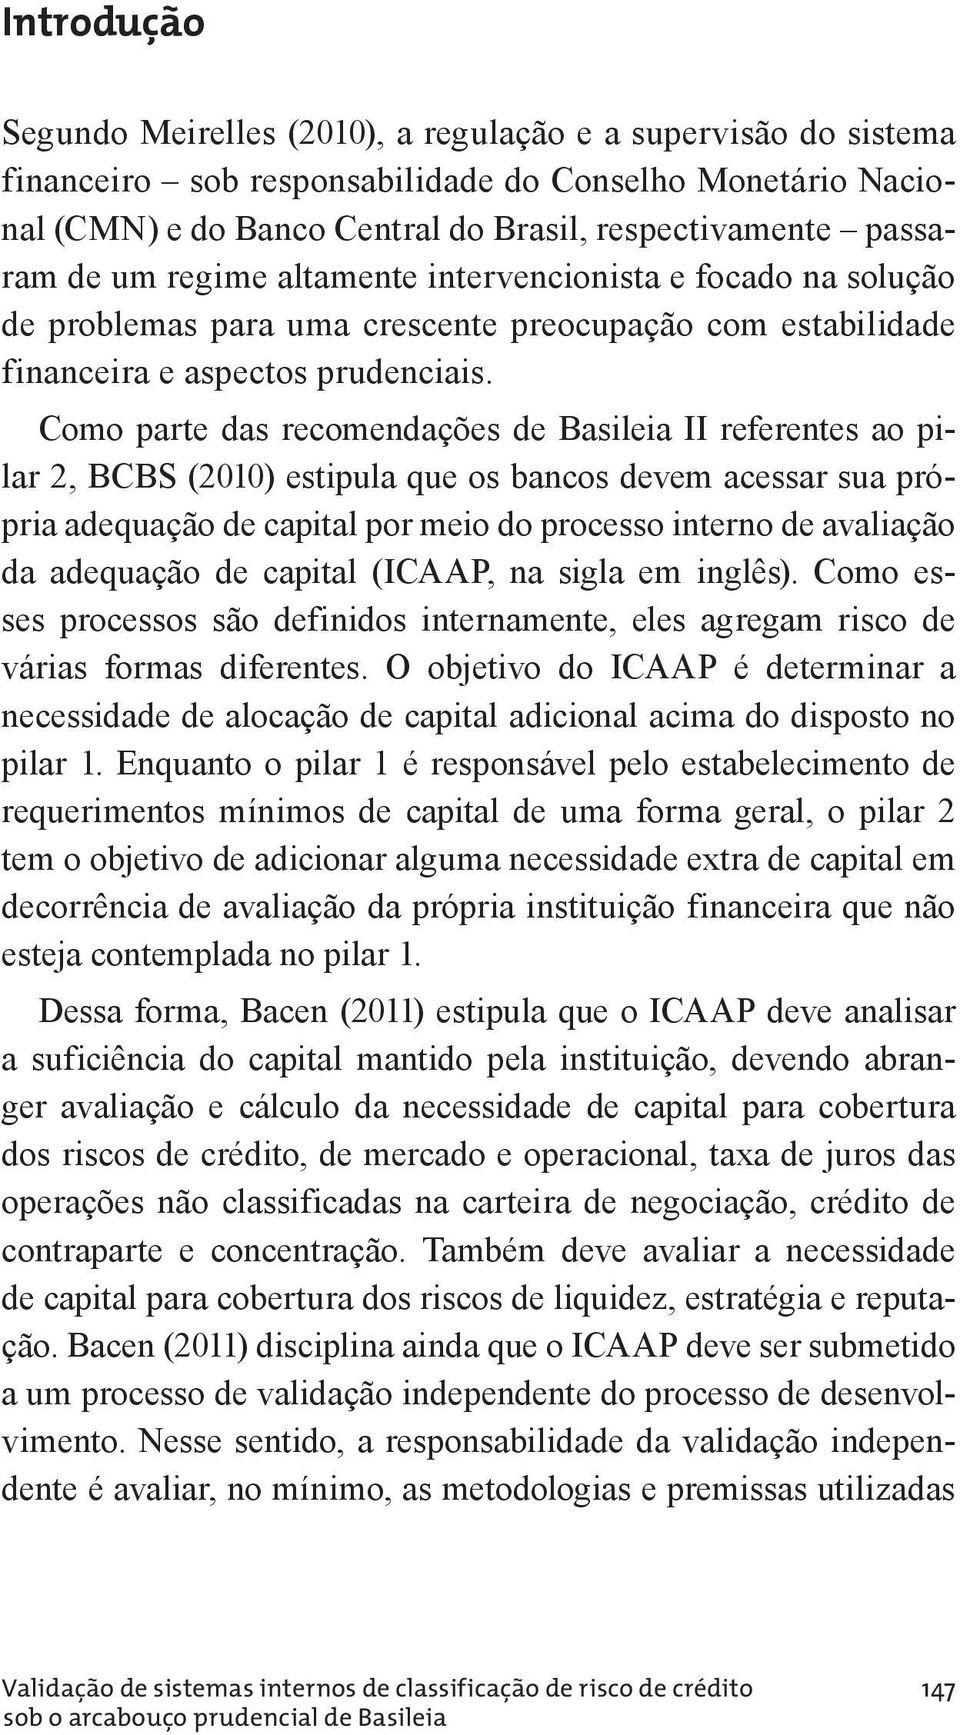 Como parte das recomendações de Basileia II referentes ao pi - lar 2, BCBS (2010) estipula que os bancos devem acessar sua própria adequação de capital por meio do processo interno de avaliação da